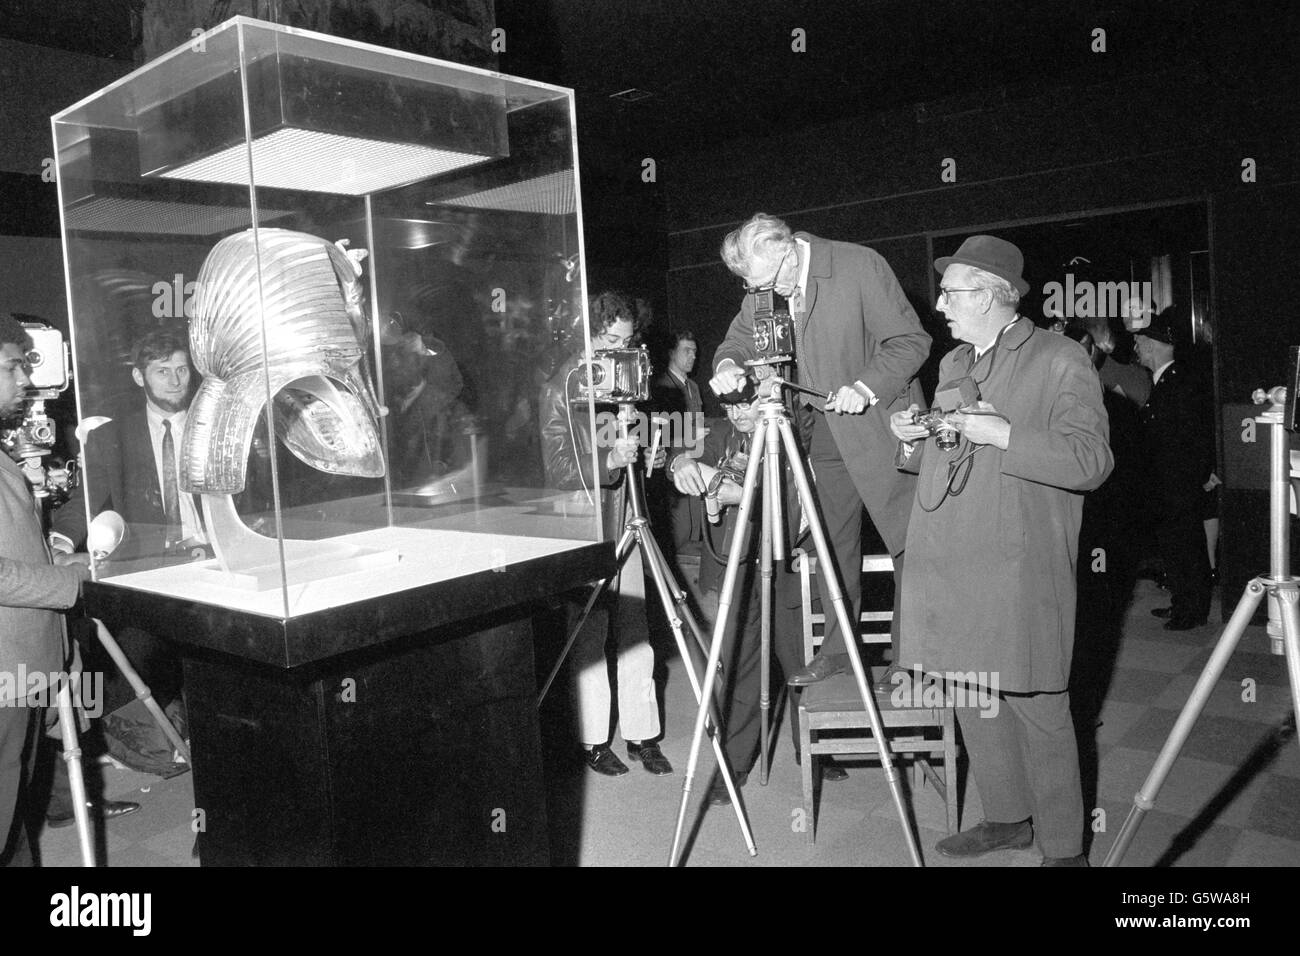 Geschichte - Tutanchamun Ausstellung - British Museum, London. Fotografen versammeln sich um die Totenmaske aus massivem Gold des ägyptischen Pharao Tutanchamun im British Museum. Stockfoto